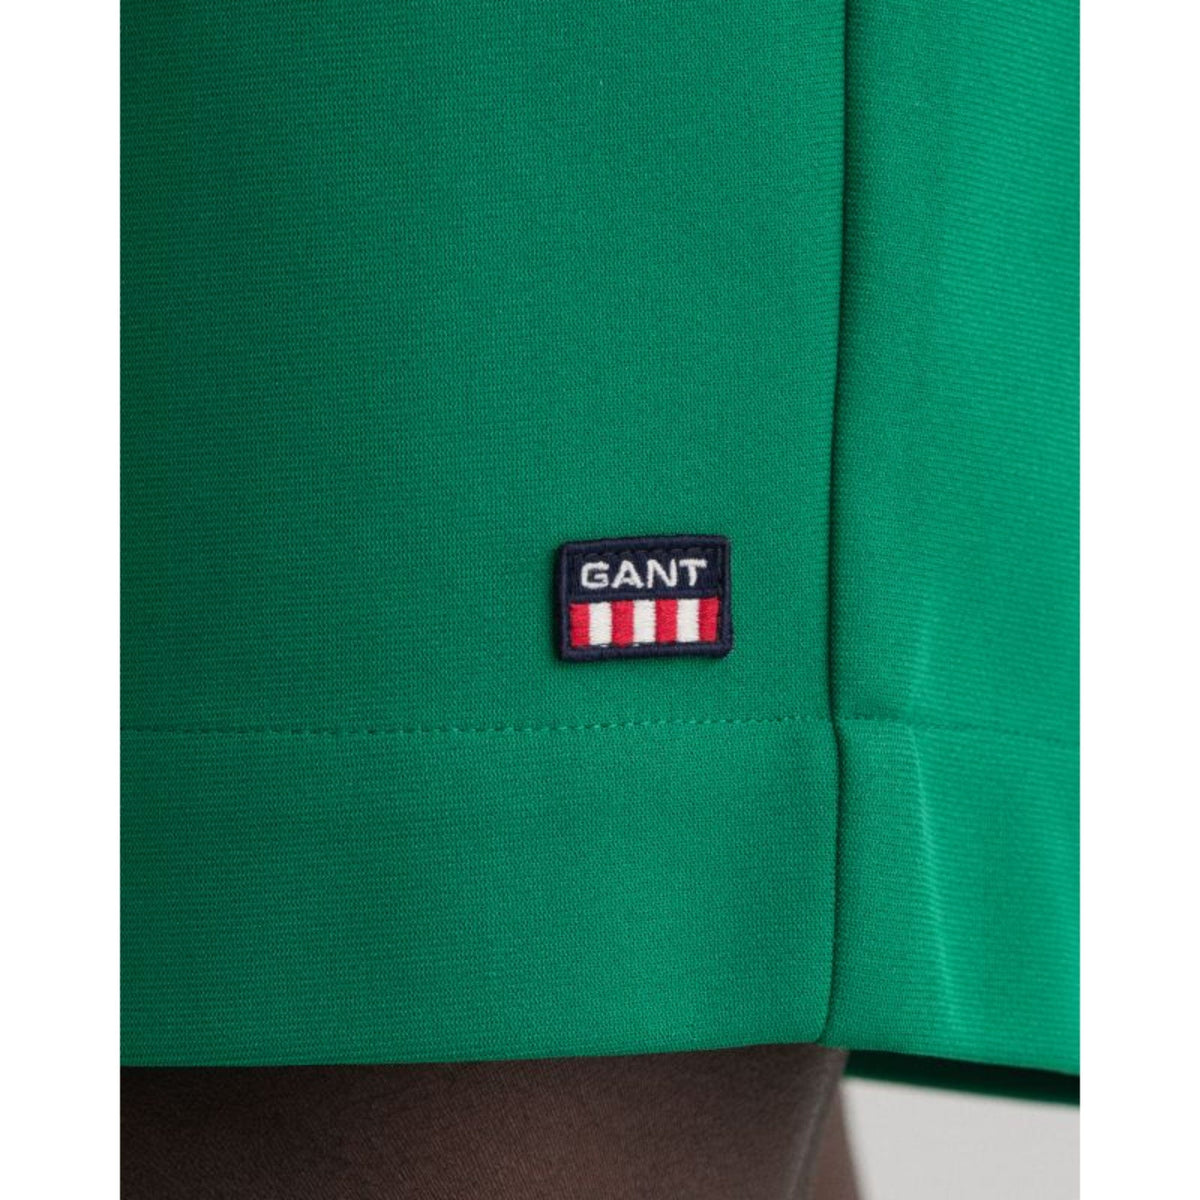 Gant Shorts GANT Retro Shield Drawstring Green Shorts